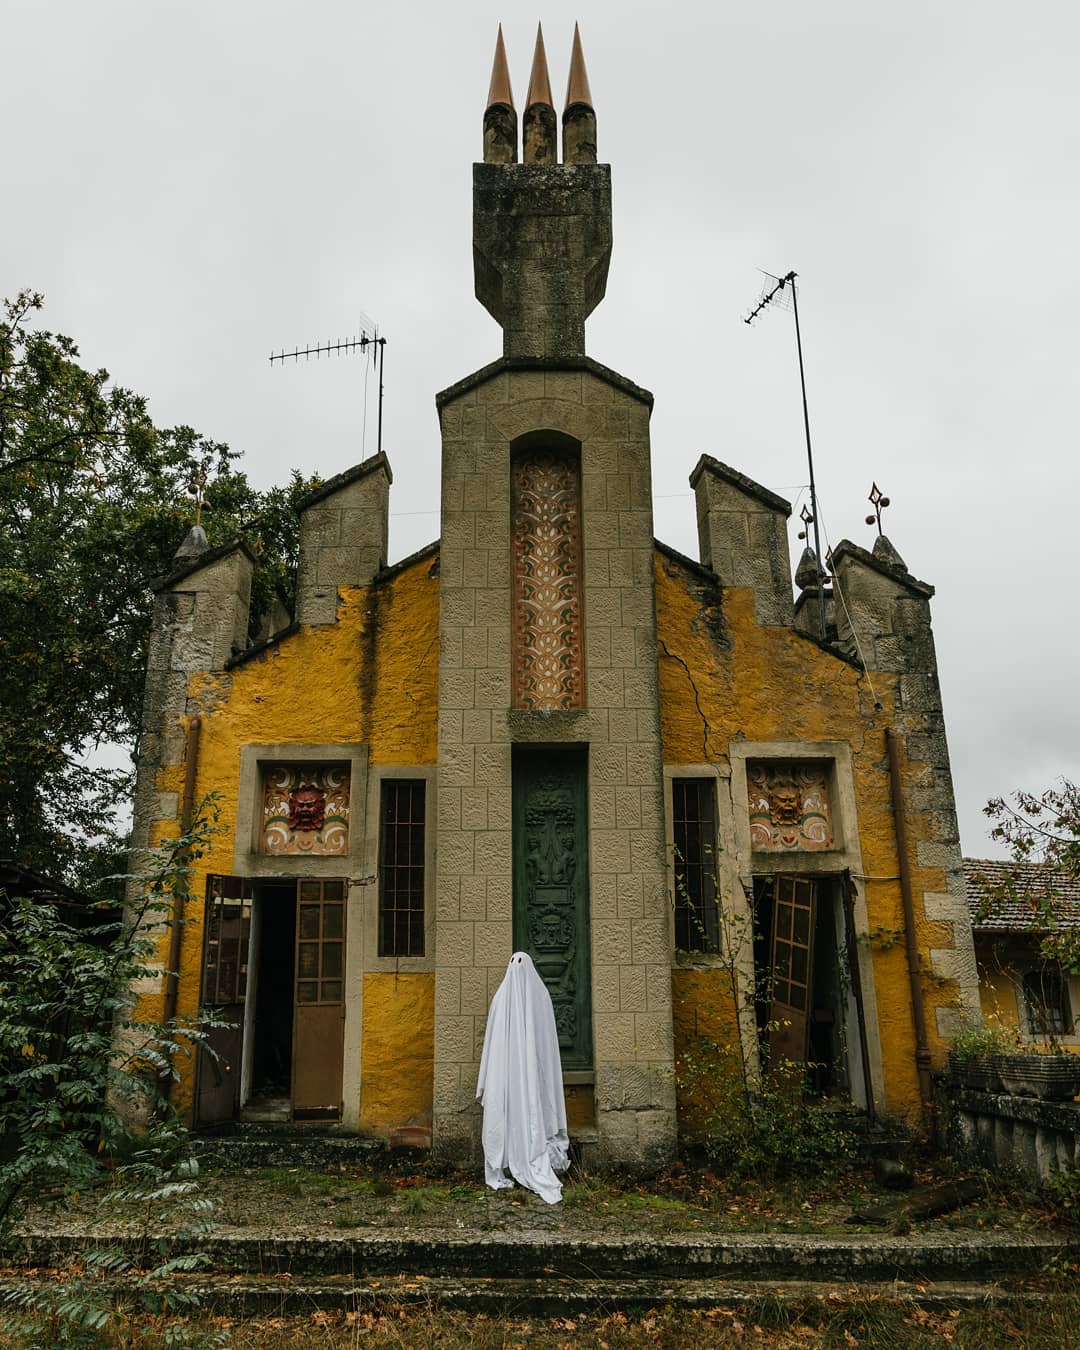 devant la porte d'une chapelle jaune armée d'antennes, le fantôme regarde pensivement ailleurs